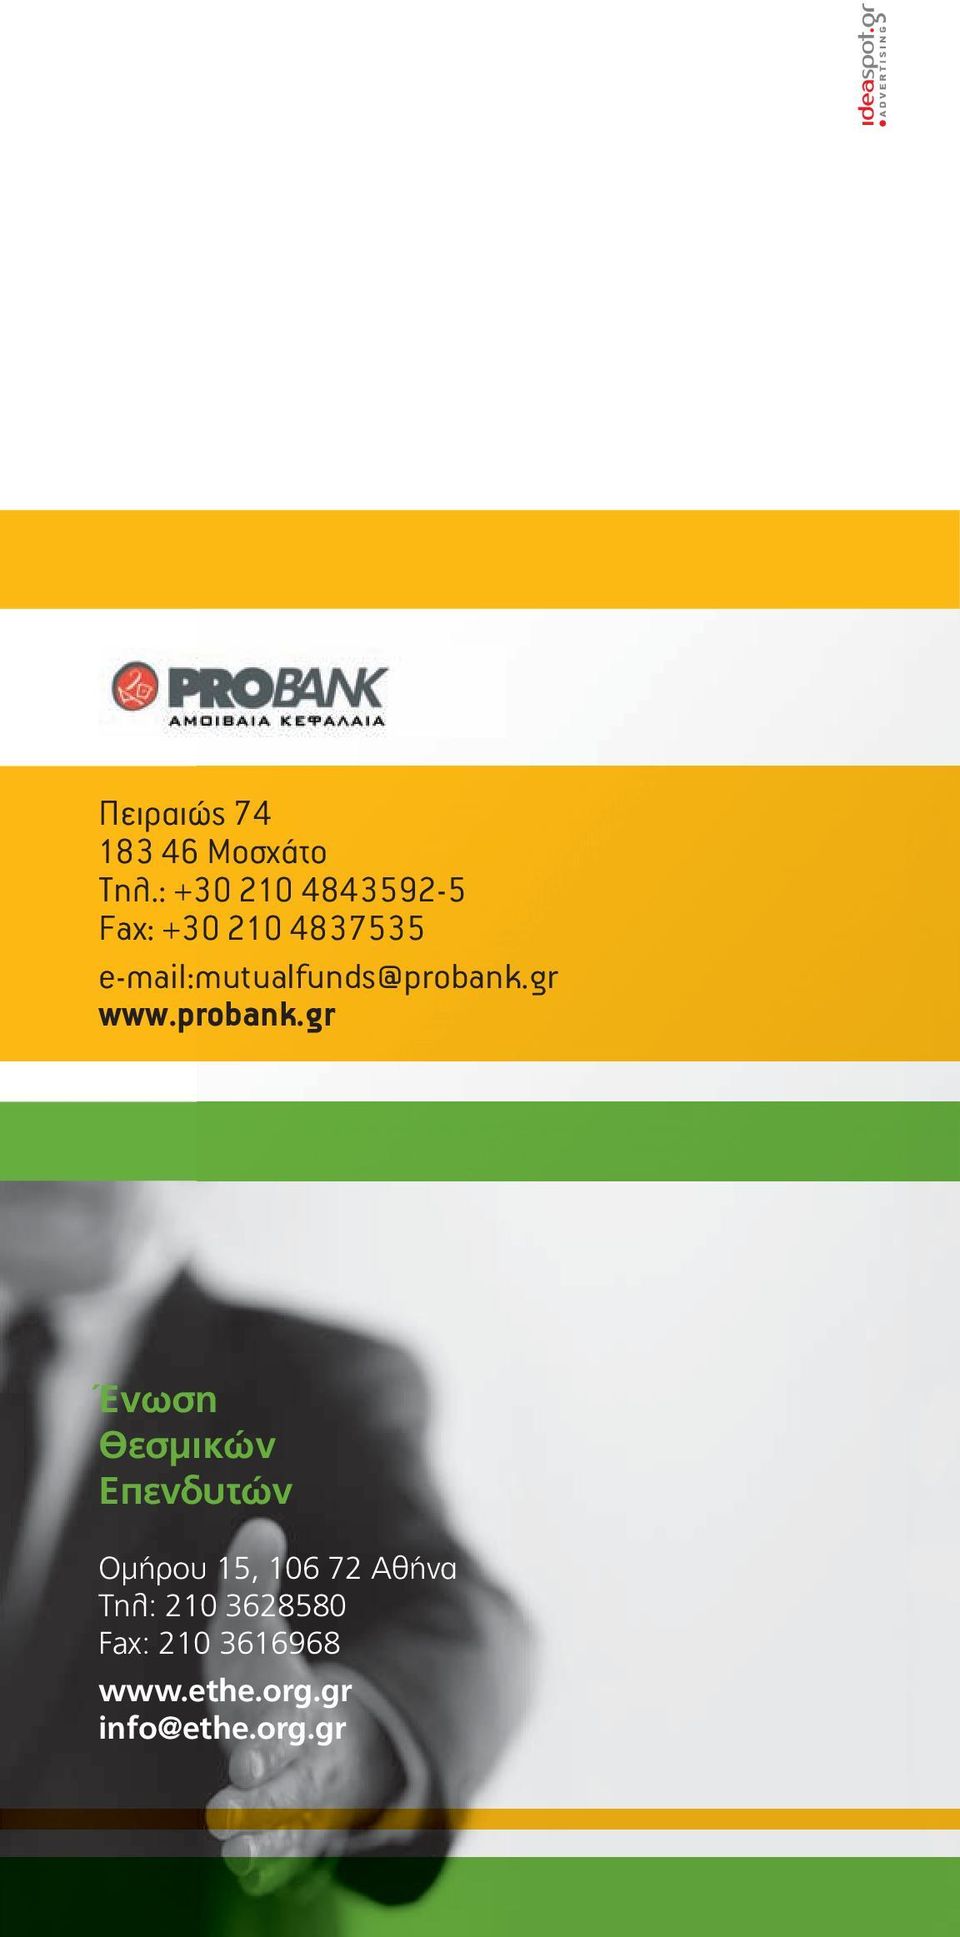 e-mail:mutualfunds@probank.